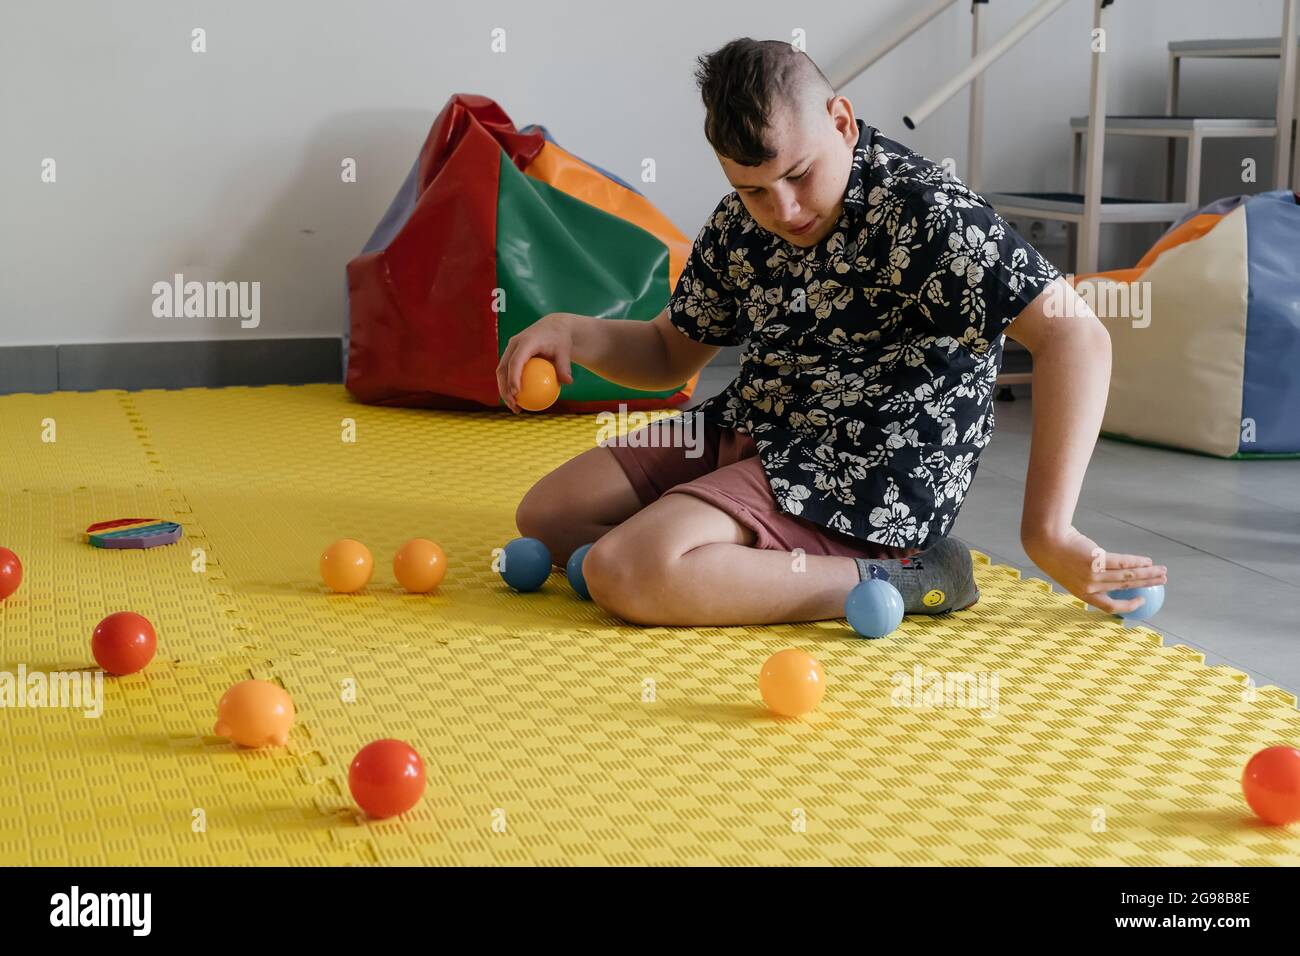 Les enfants ayant un handicap se font une activité sensorielle avec des  jouets, des balles, des petits objets, un garçon souffrant de paralysie  cérébrale jouant à un jeu apaisant, s'entraîner à de